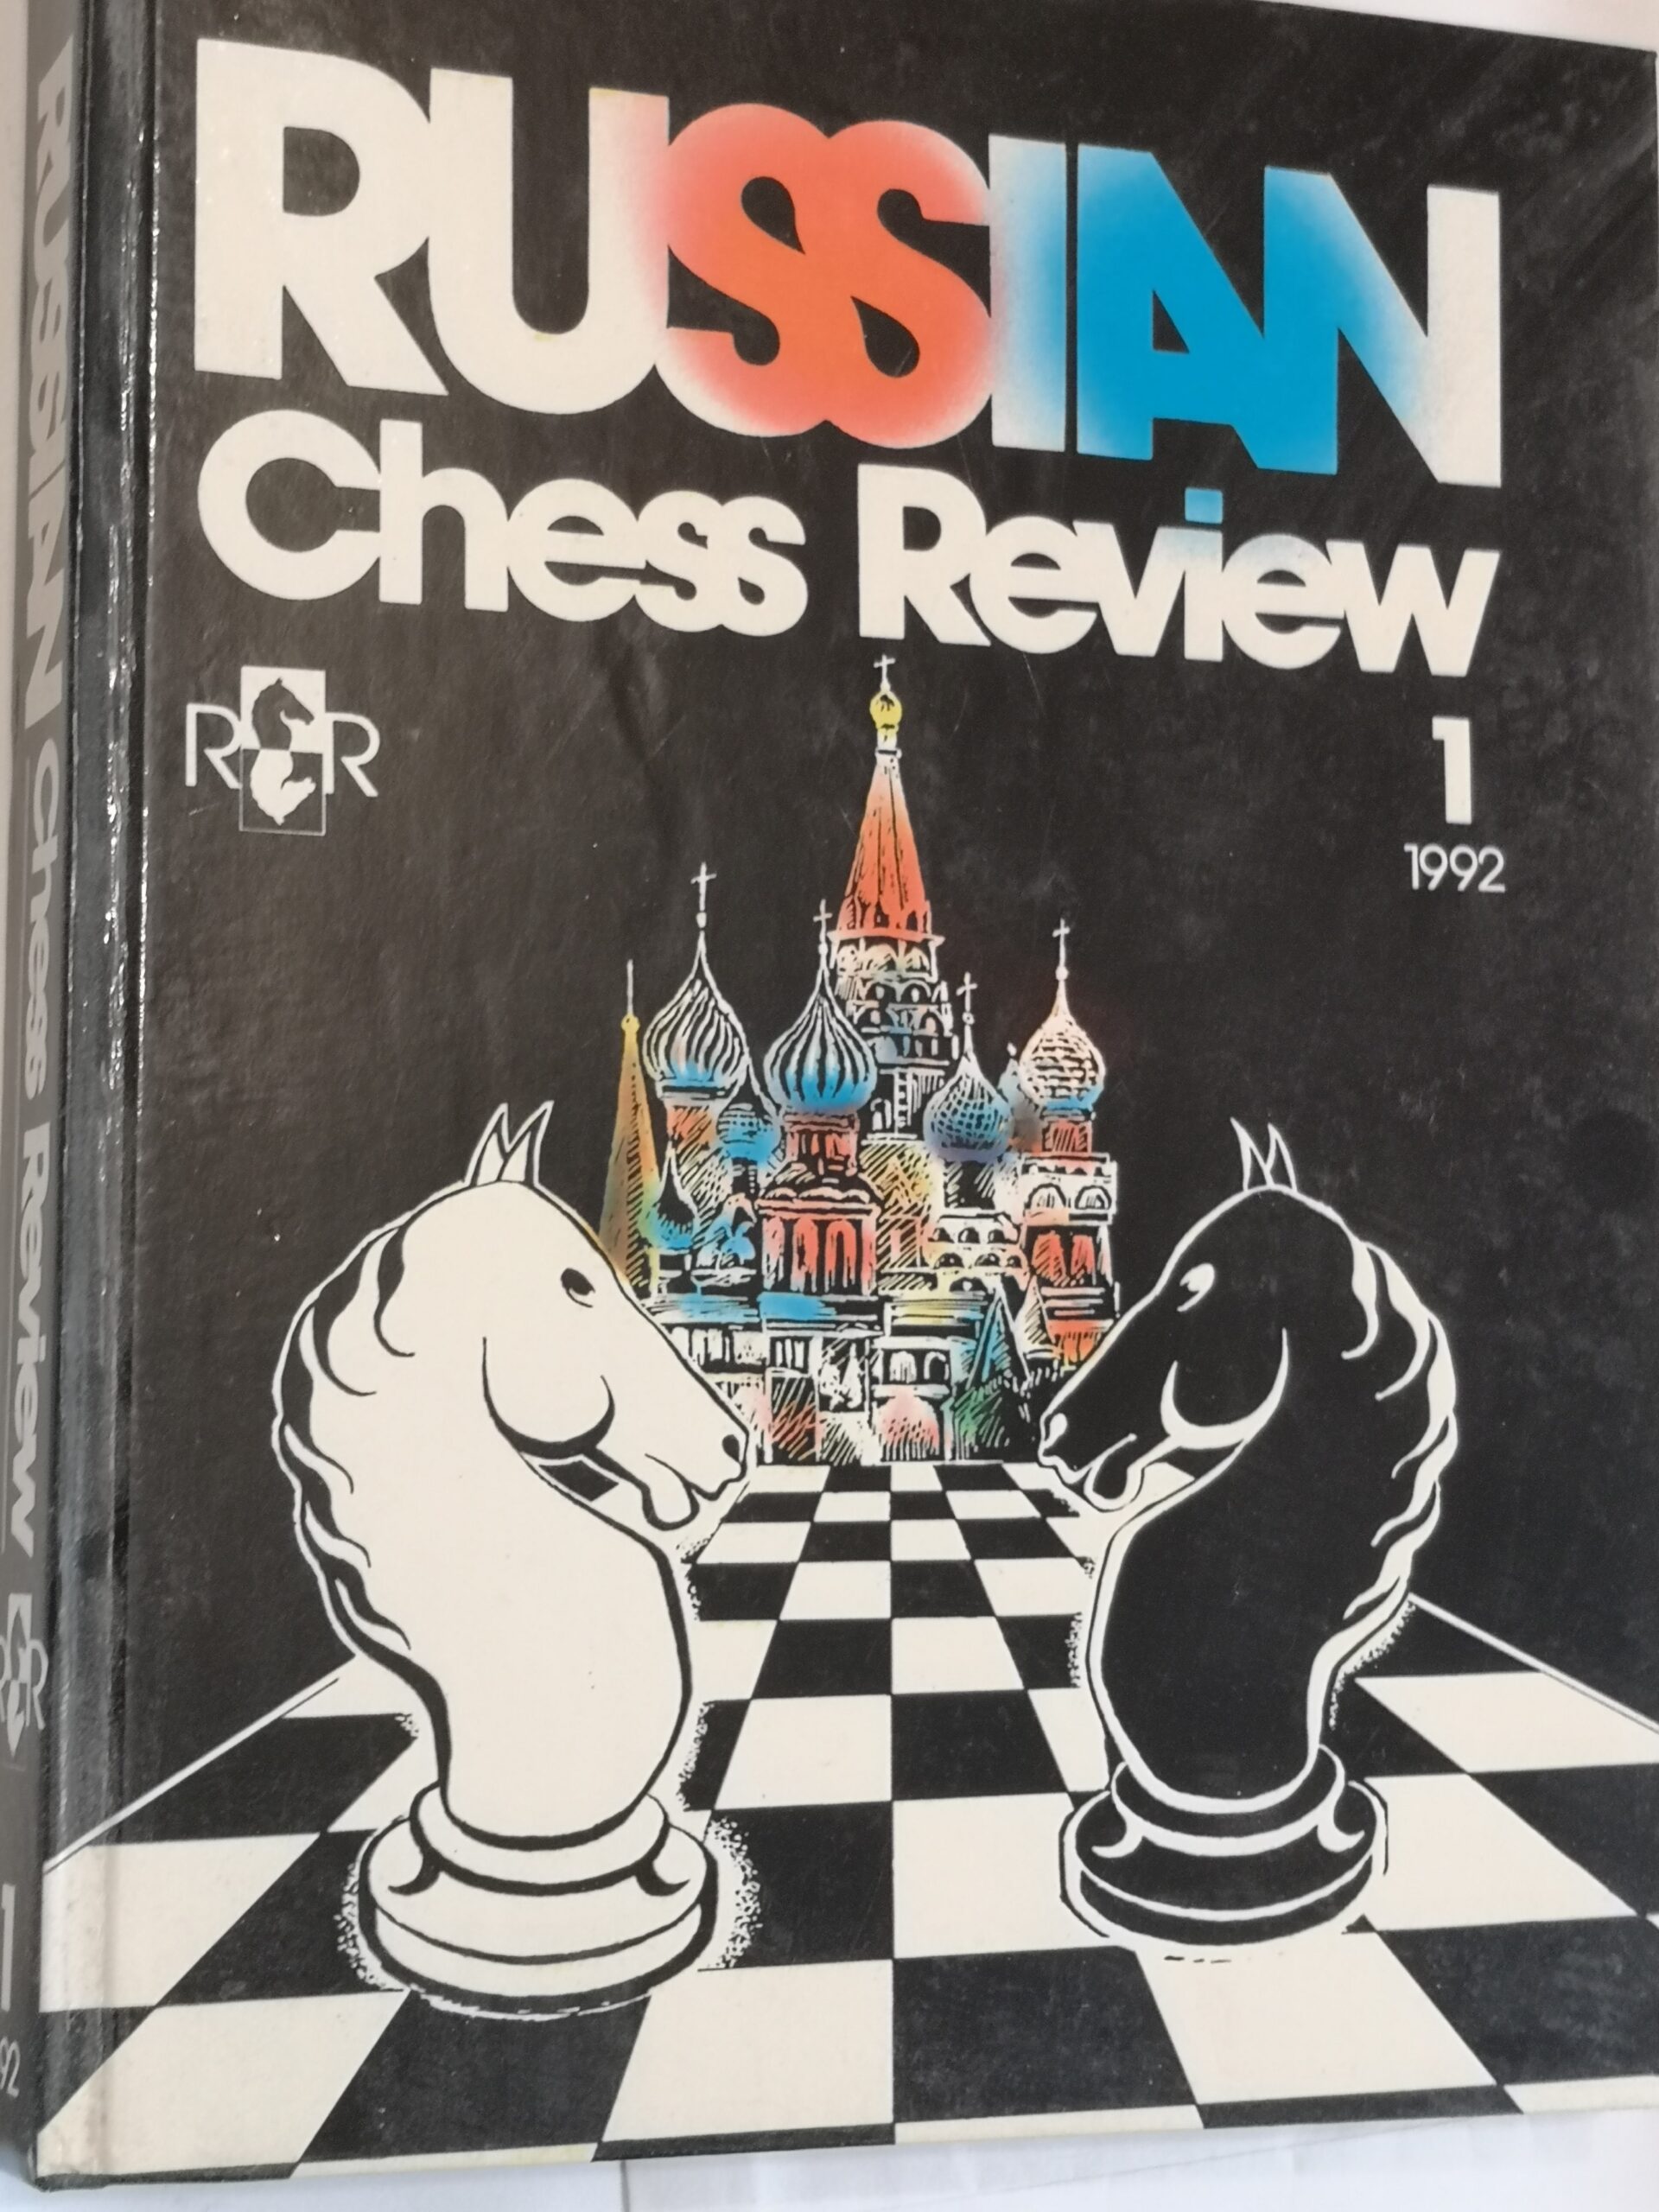 273# Russian Chess Review 1 rocznik 1992 dostępne 2 sztuki